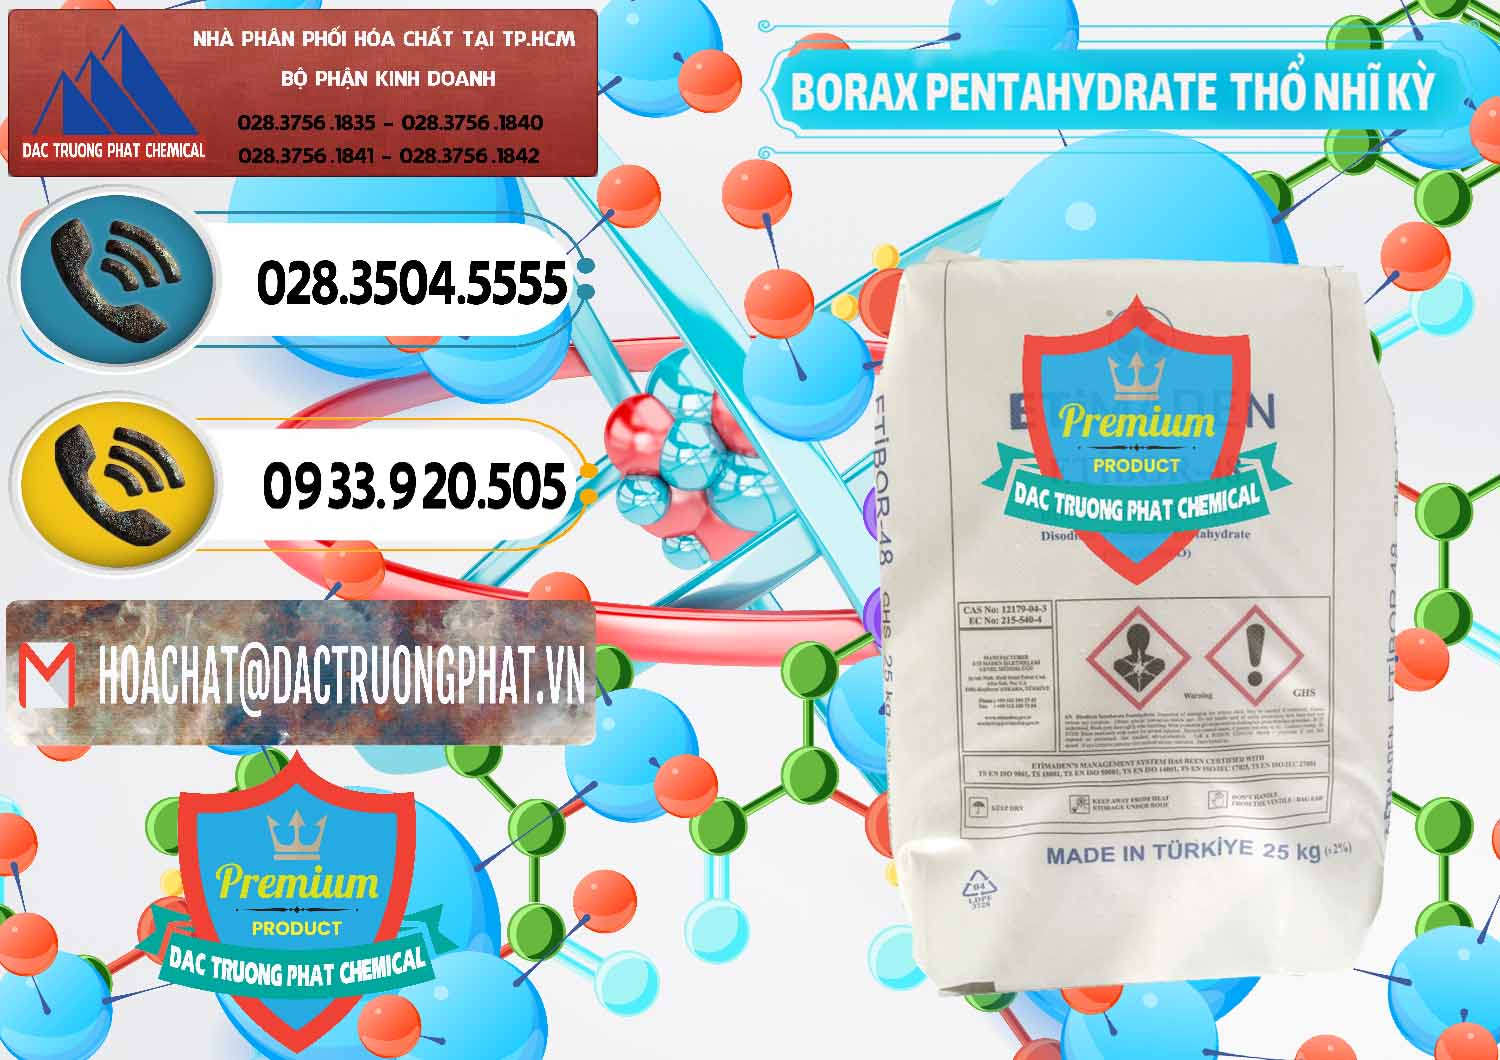 Cty chuyên bán _ phân phối Borax Pentahydrate Thổ Nhĩ Kỳ Turkey - 0431 - Đơn vị cung cấp - kinh doanh hóa chất tại TP.HCM - hoachatdetnhuom.vn